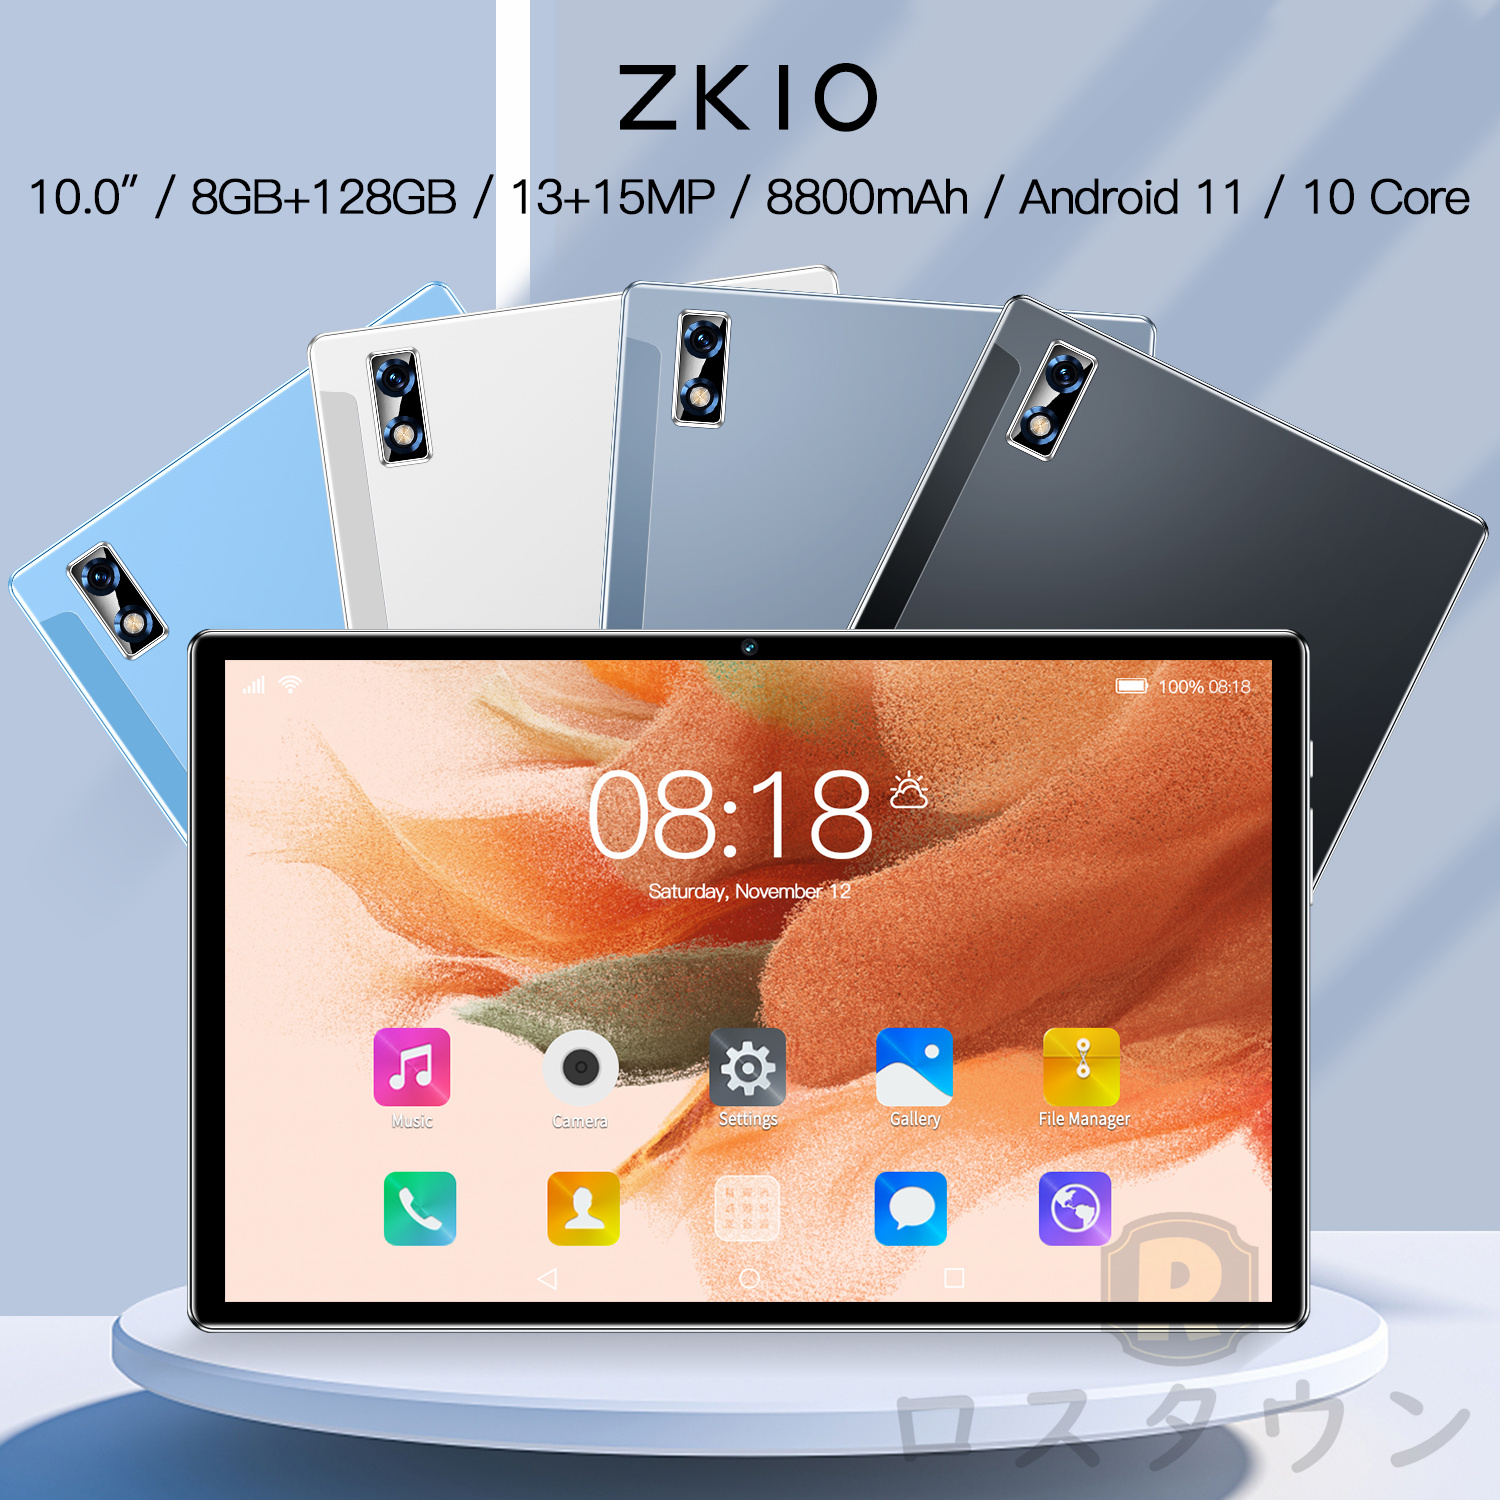 タブレット PC 2023最新作 10.1インチ Android12.0 FullHD 本体 wi-fi